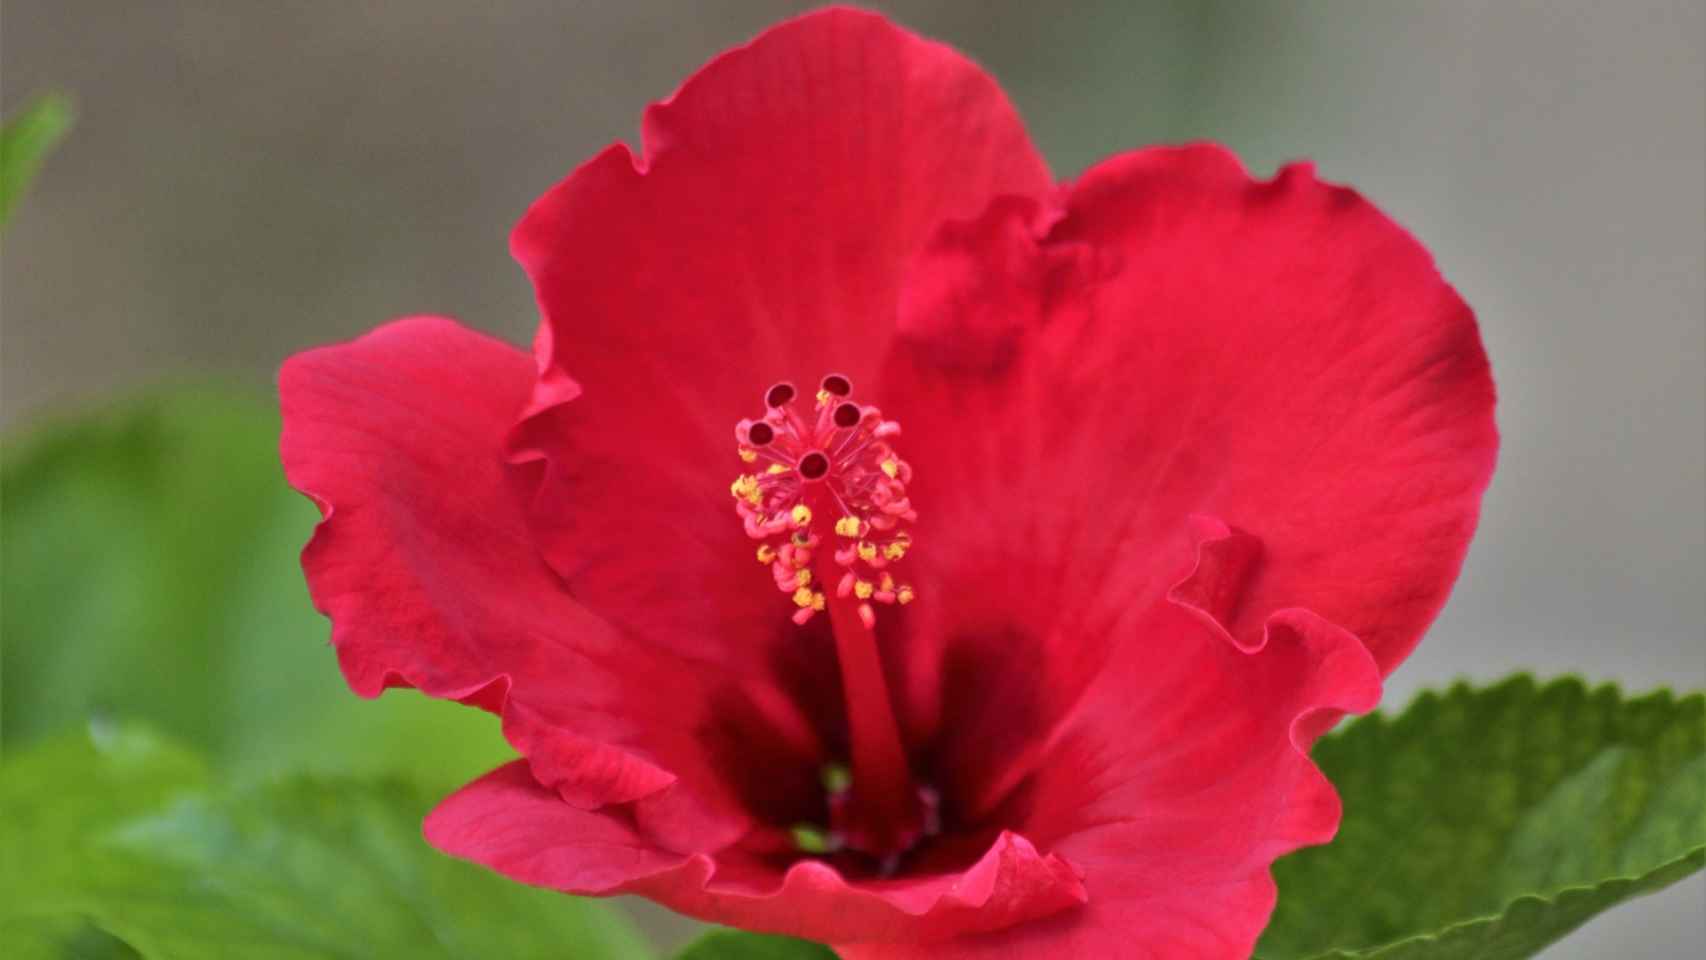 El color rojo de sus flores es lo que da a esta infusión su característico aspecto.